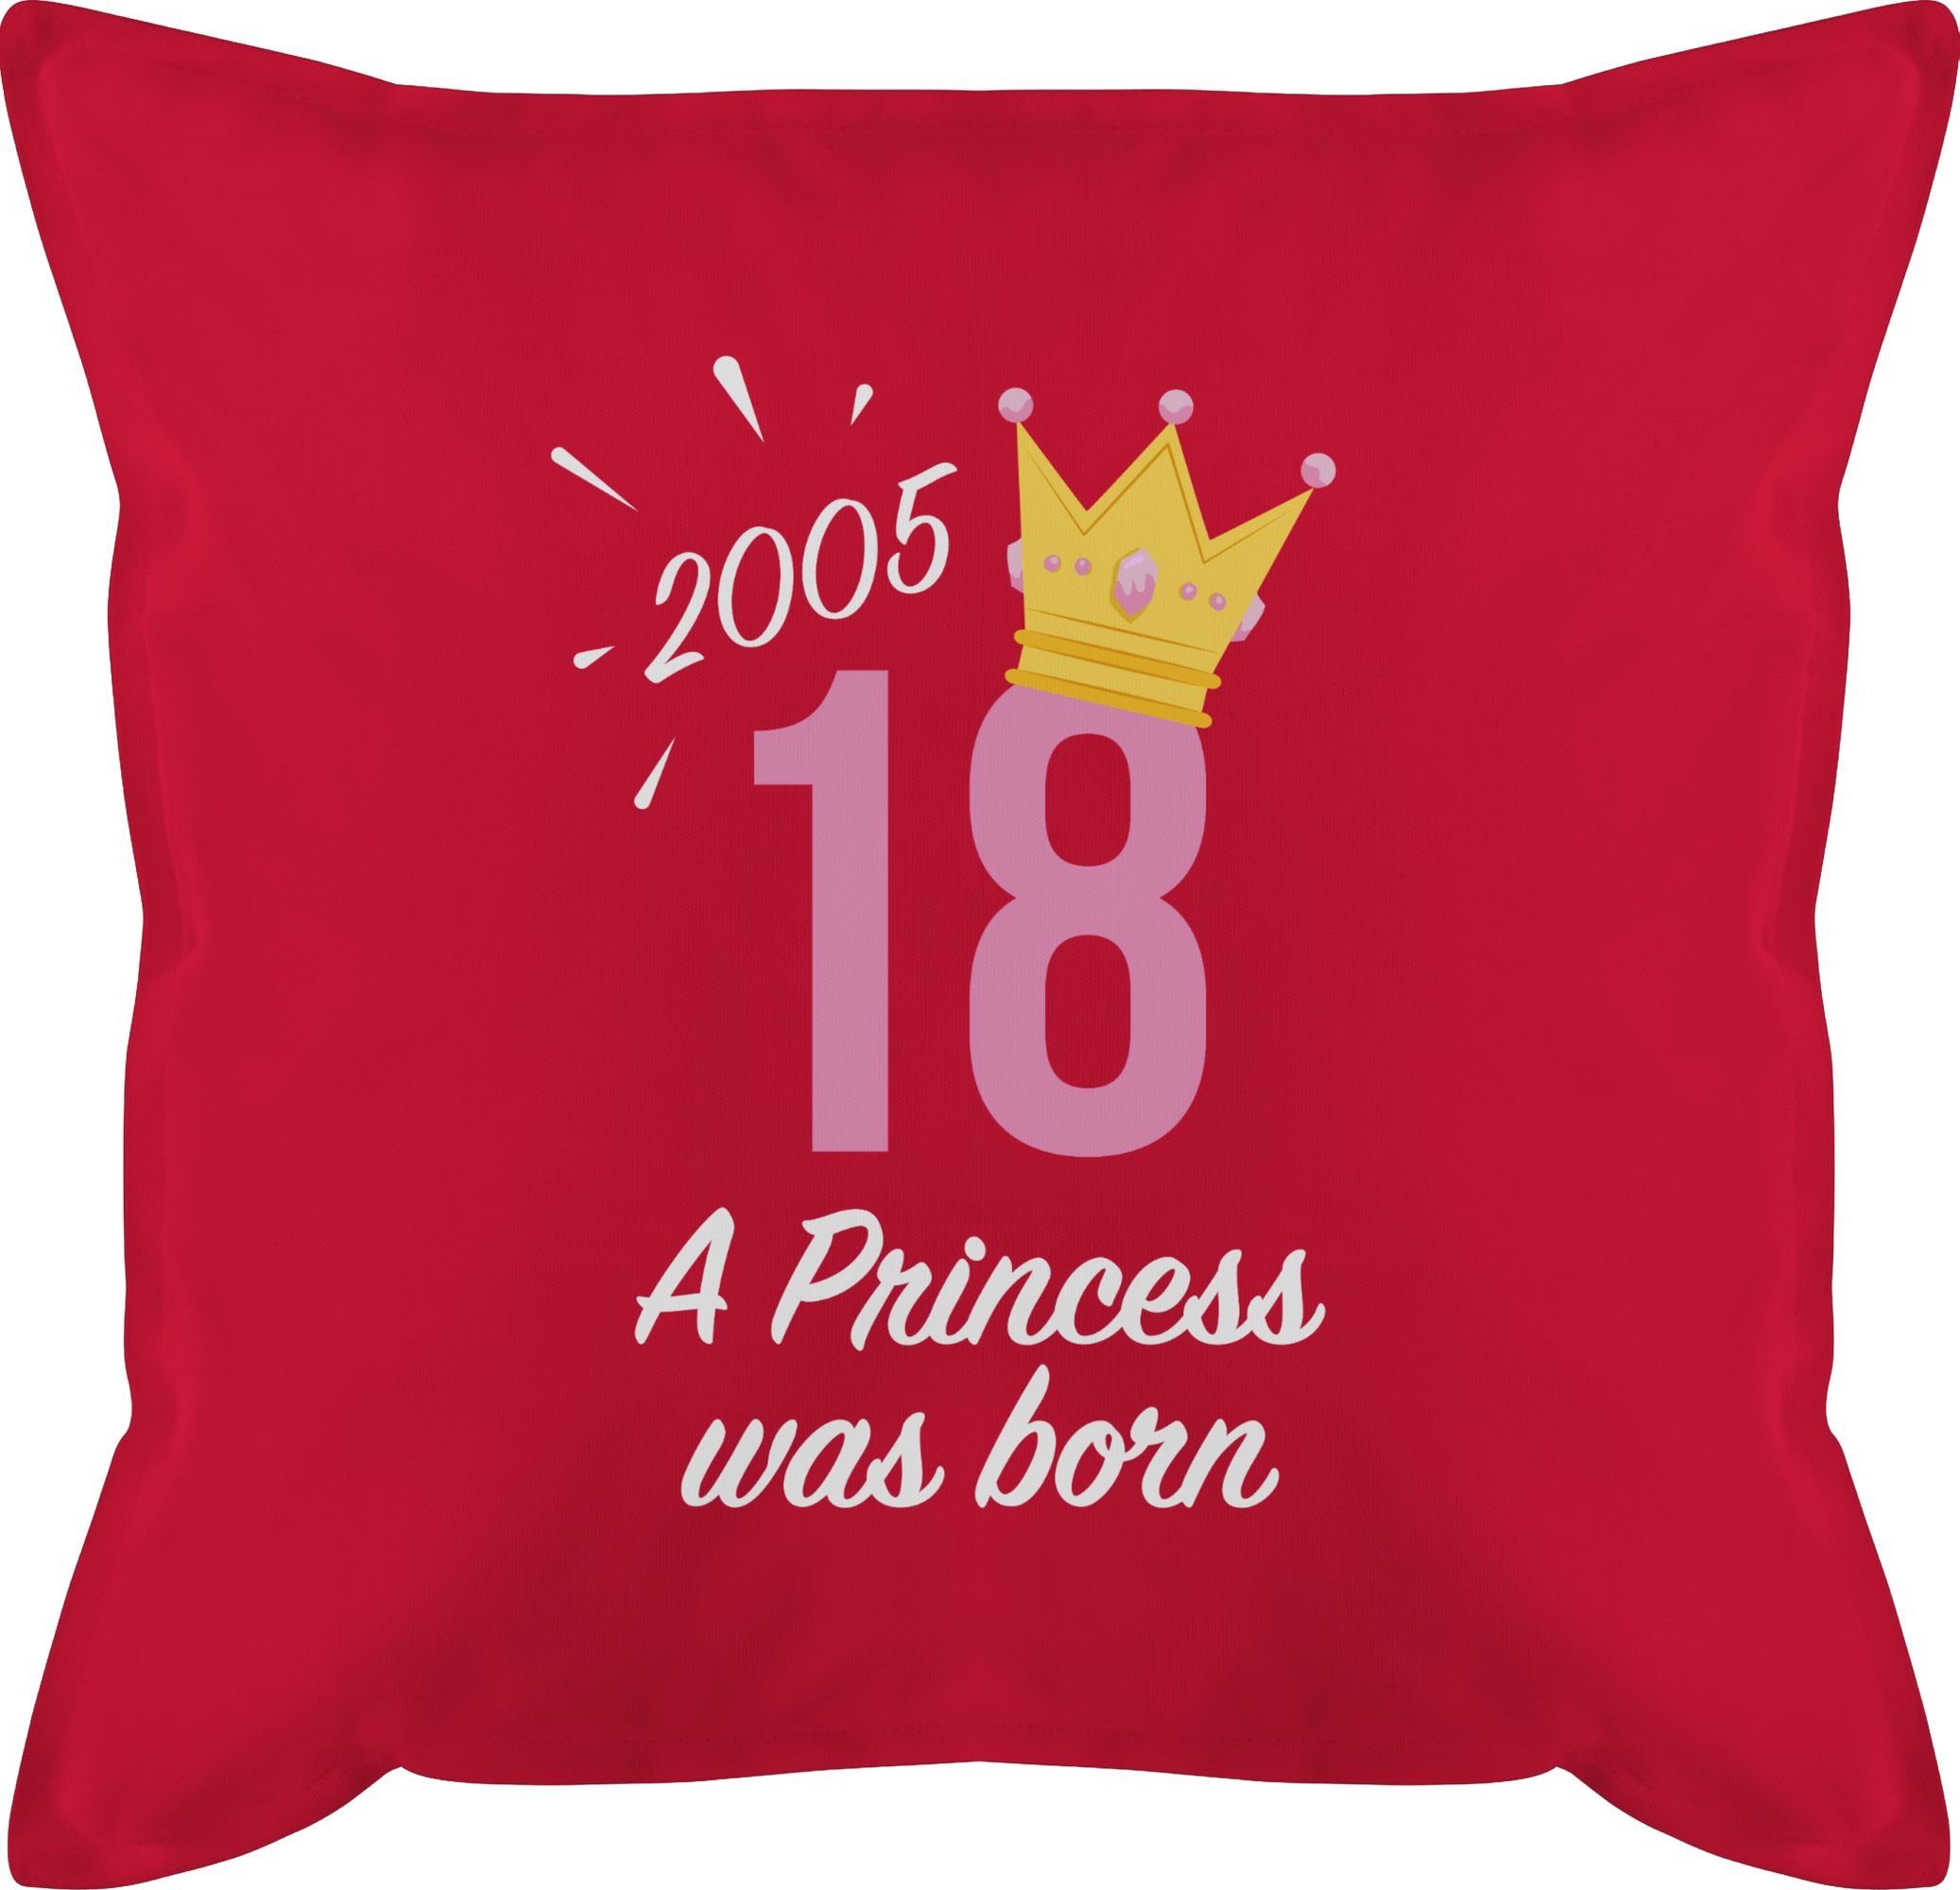 Shirtracer Dekokissen Achtzehnter Geburtstag Mädchen Princess 2005, 18. Geburtstag Kissen 3 Rot